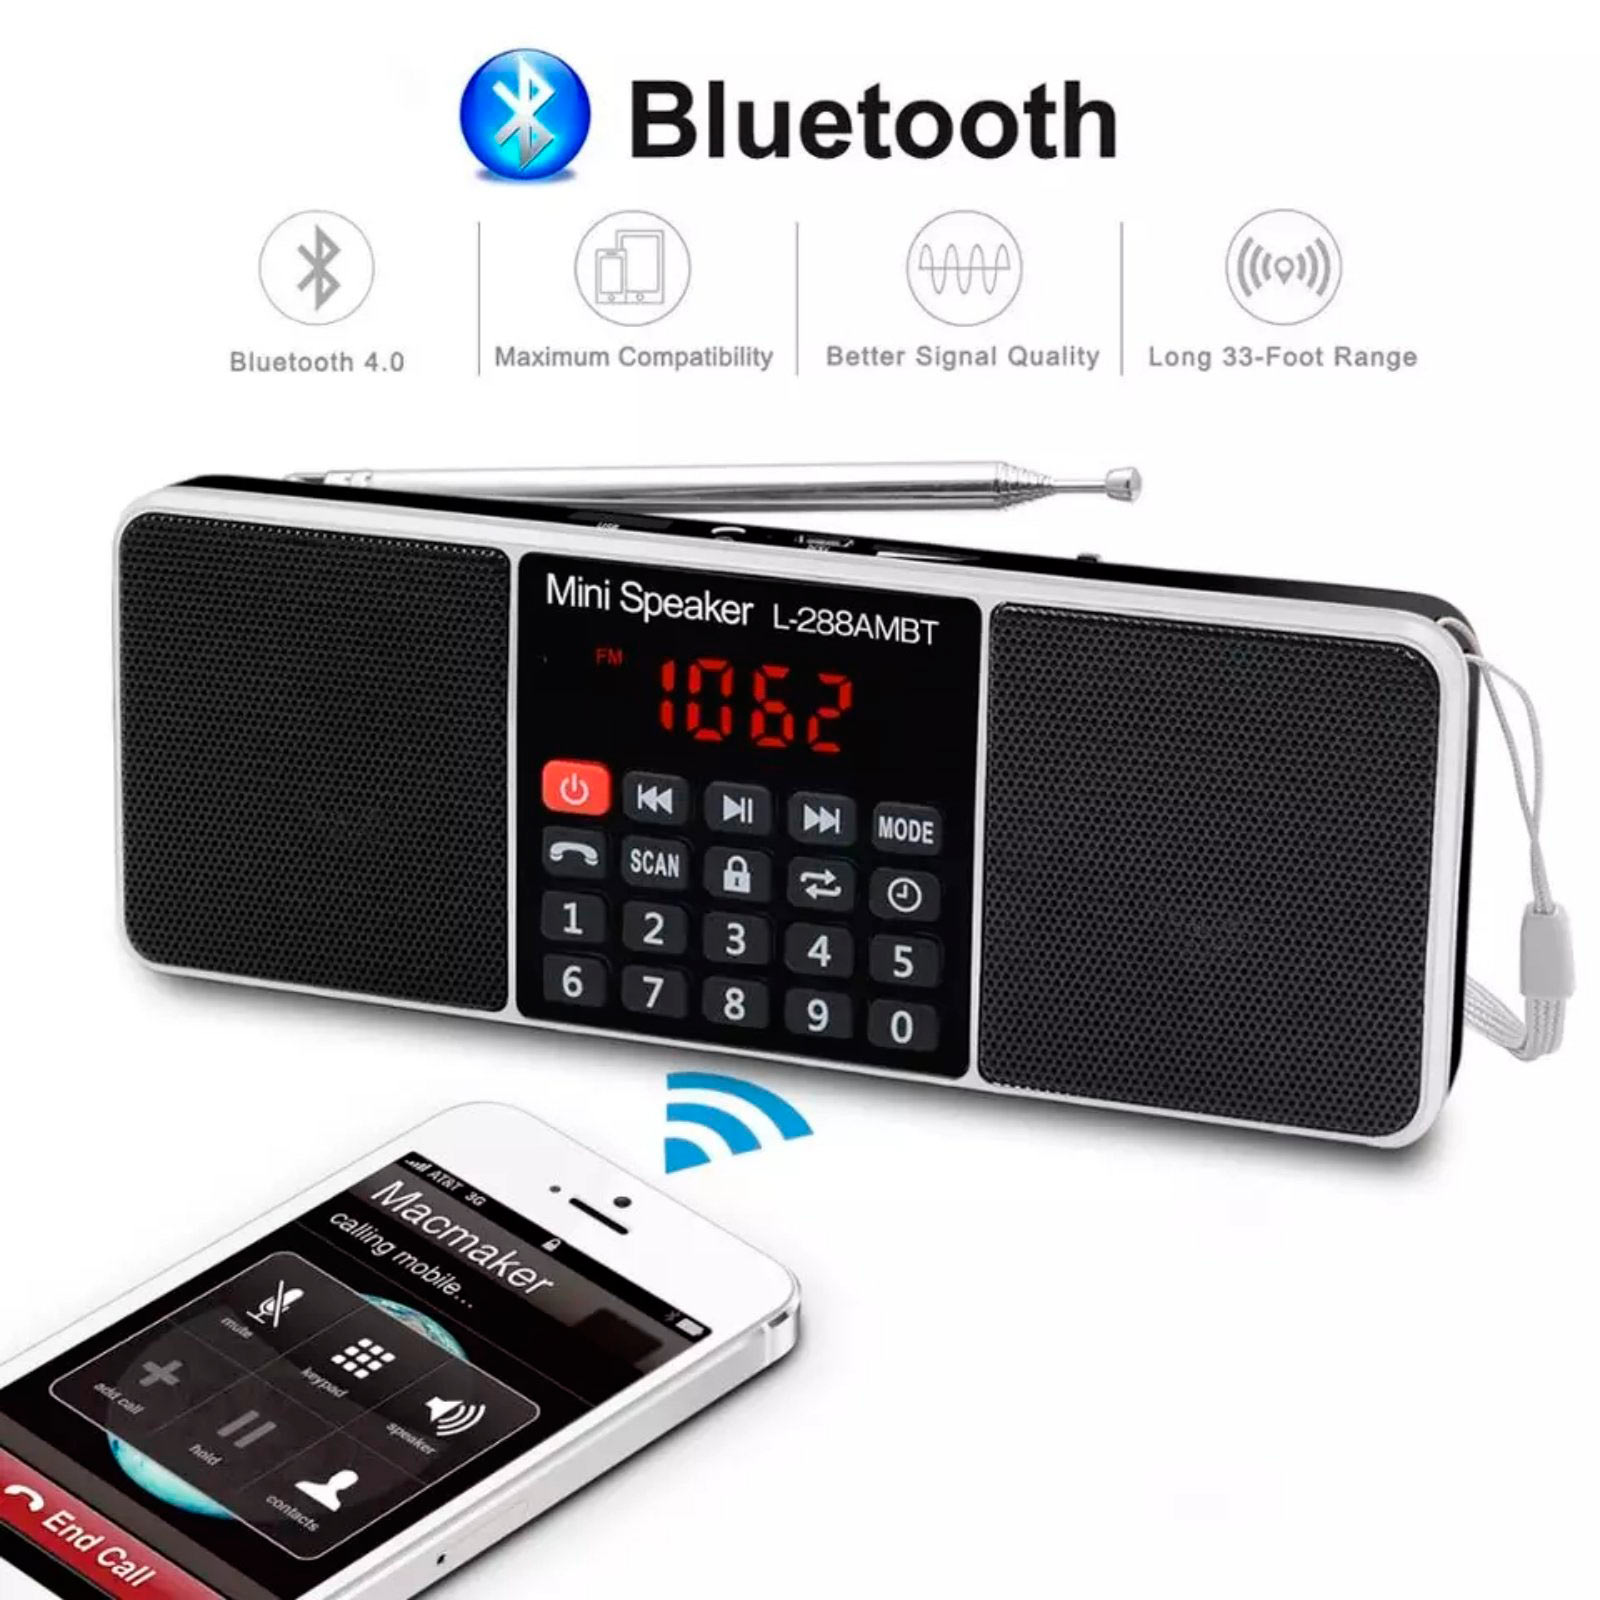 Euroline Радиоприемник L-288AMBT цифровое радио с Bluetooth/USB/SD плеером. Купить в Киеве